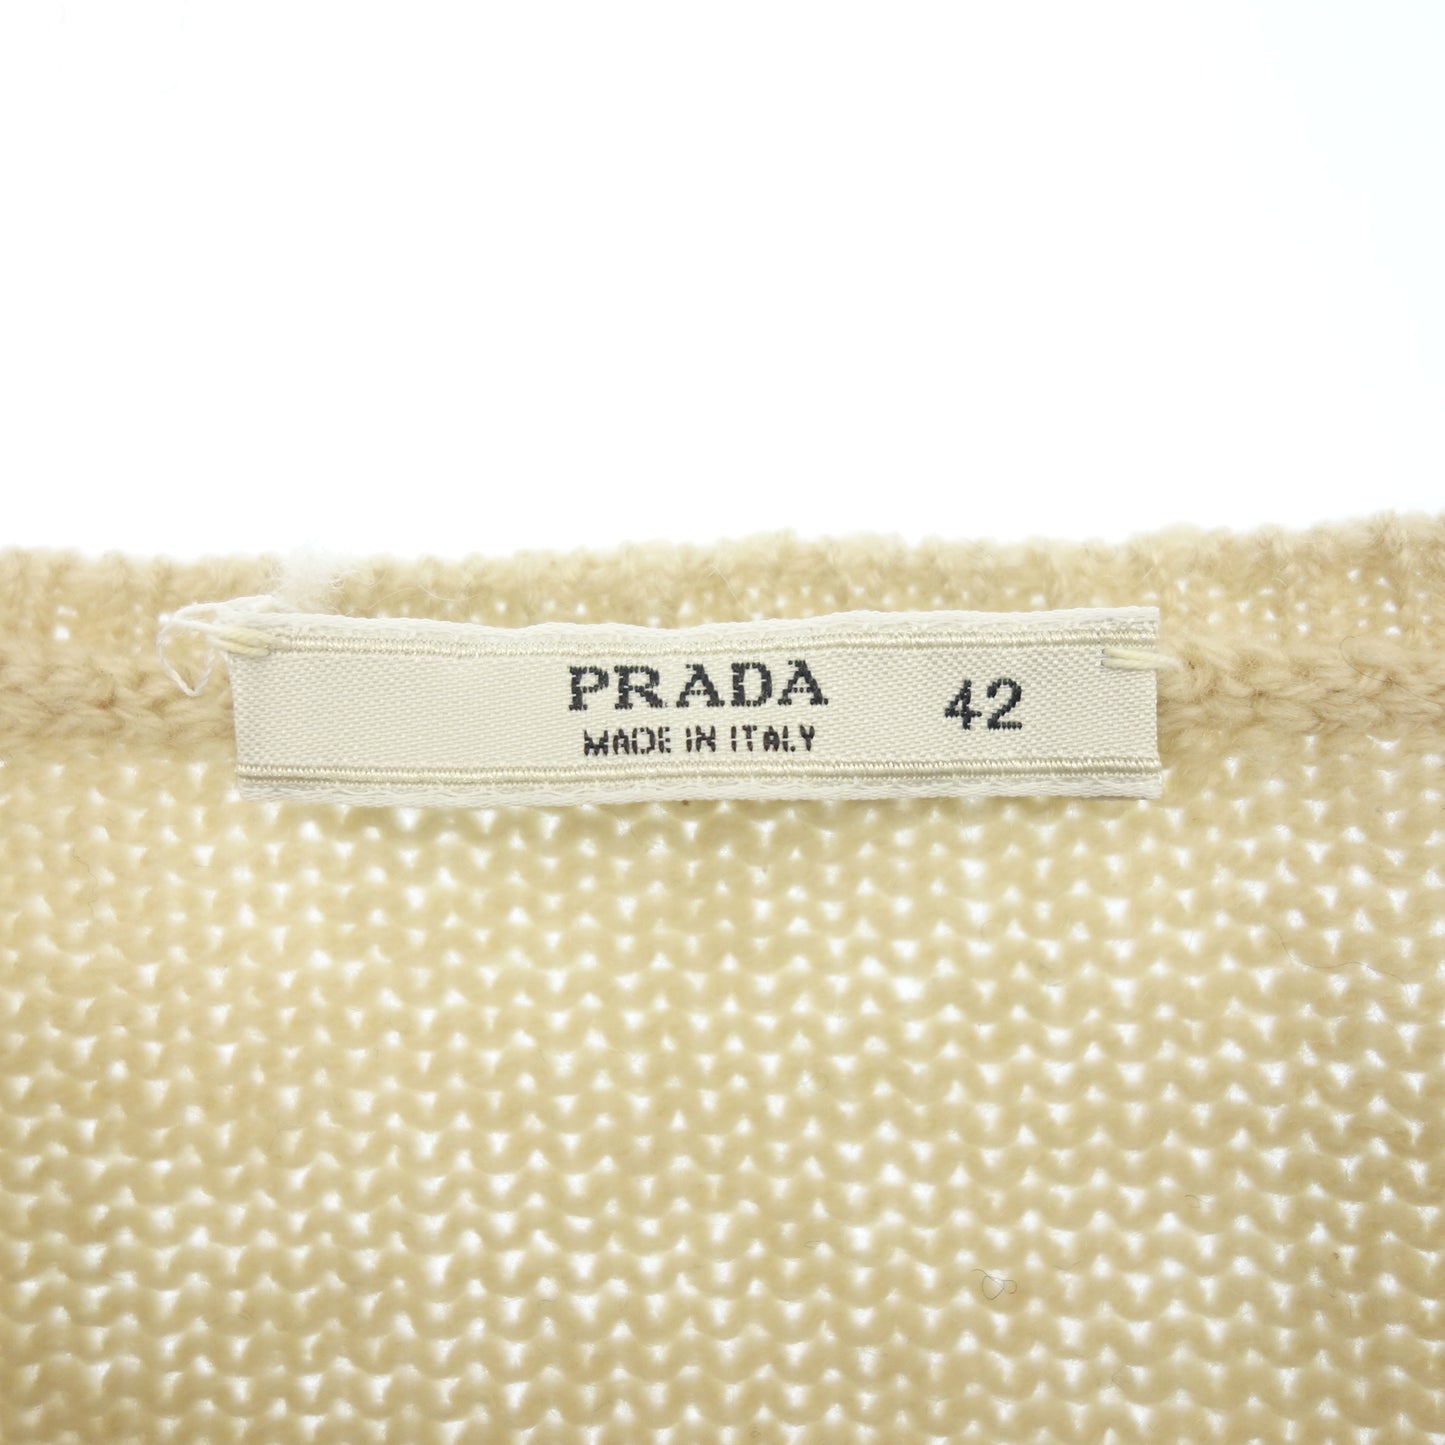 状况良好◆普拉达针织毛衣羊绒 100 女式米色 42 码 PRADA [AFB41] 